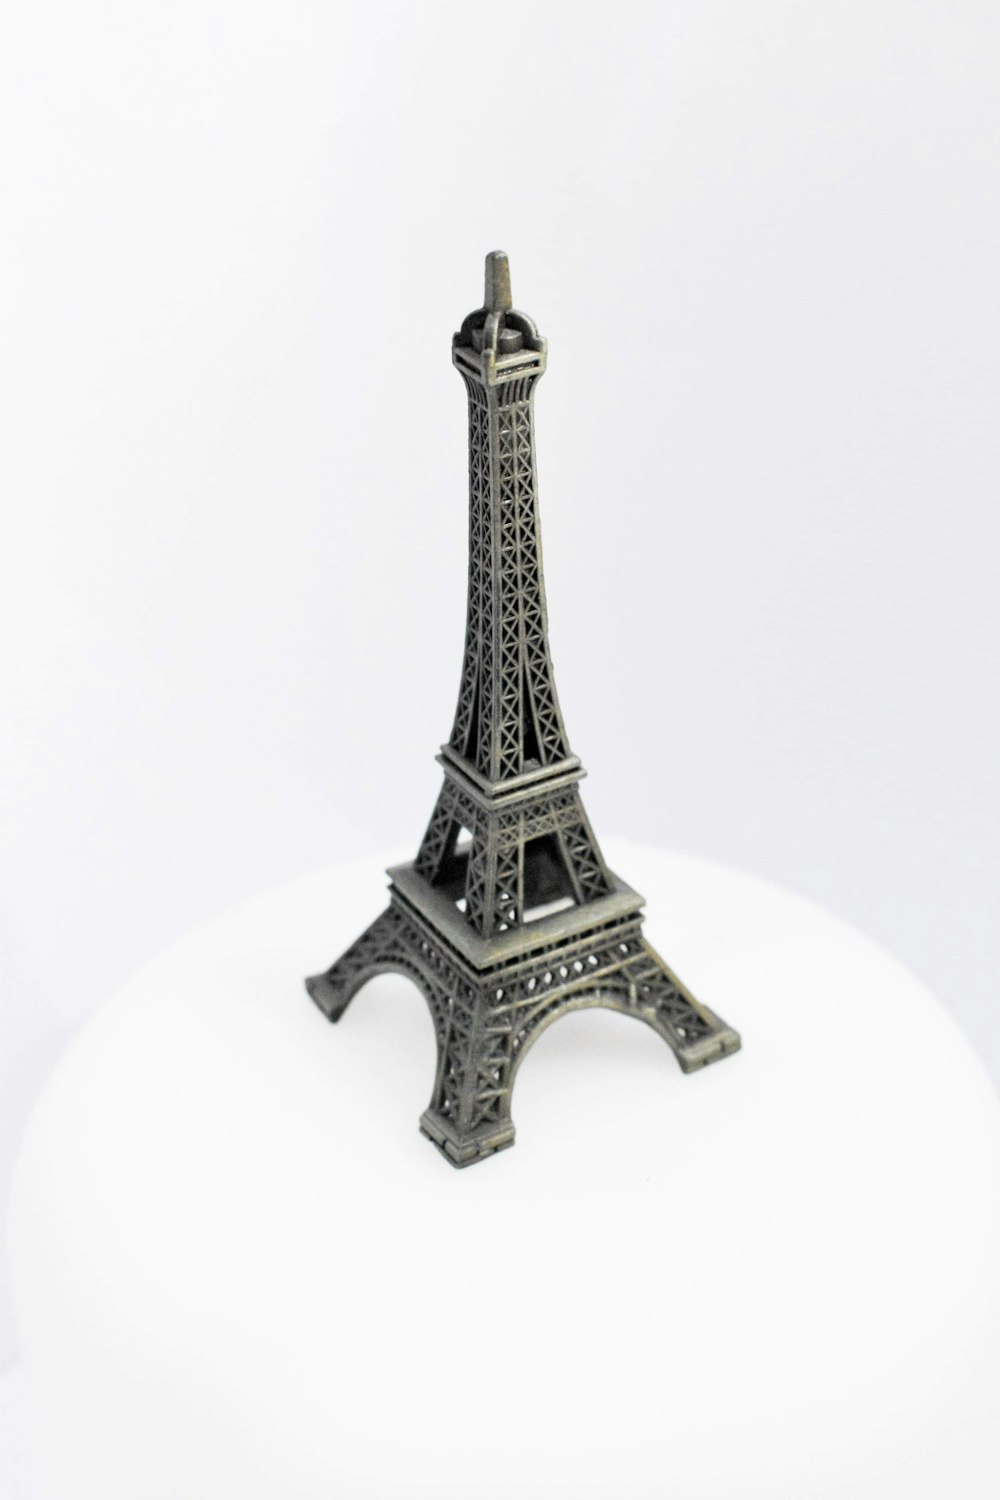 Maquette de la Tour Eiffel